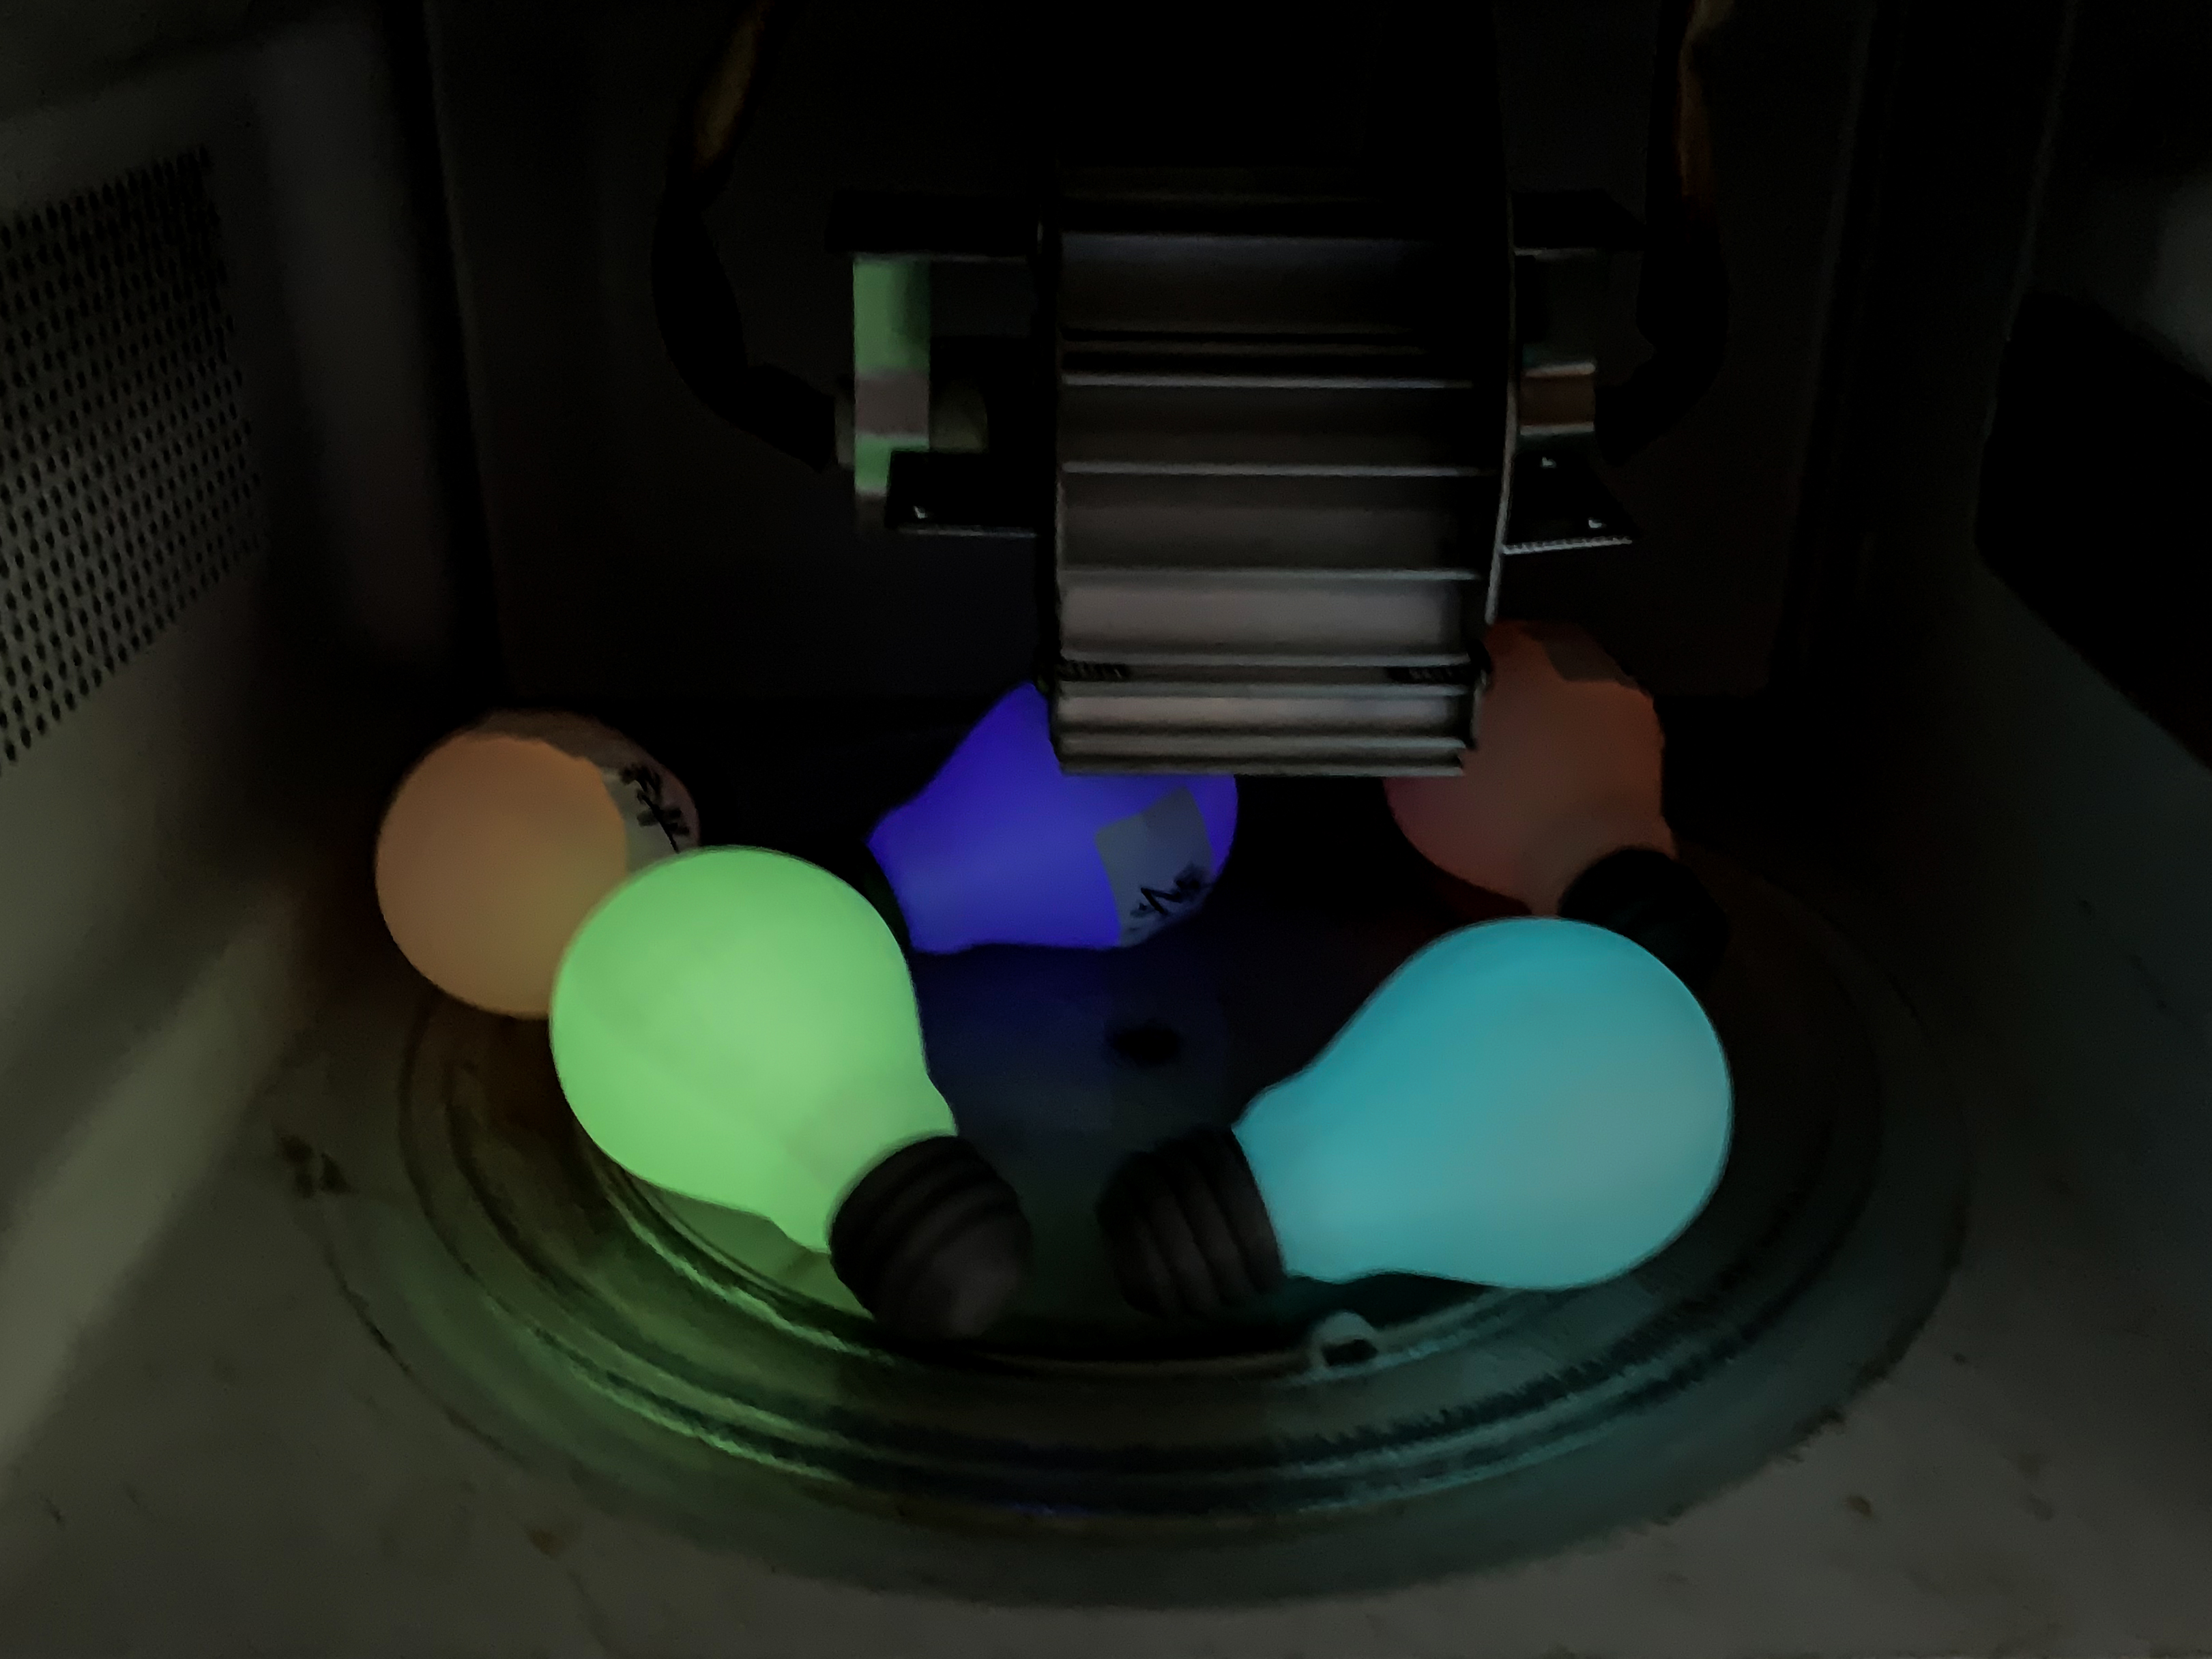 glow-in-dark 3d printing material